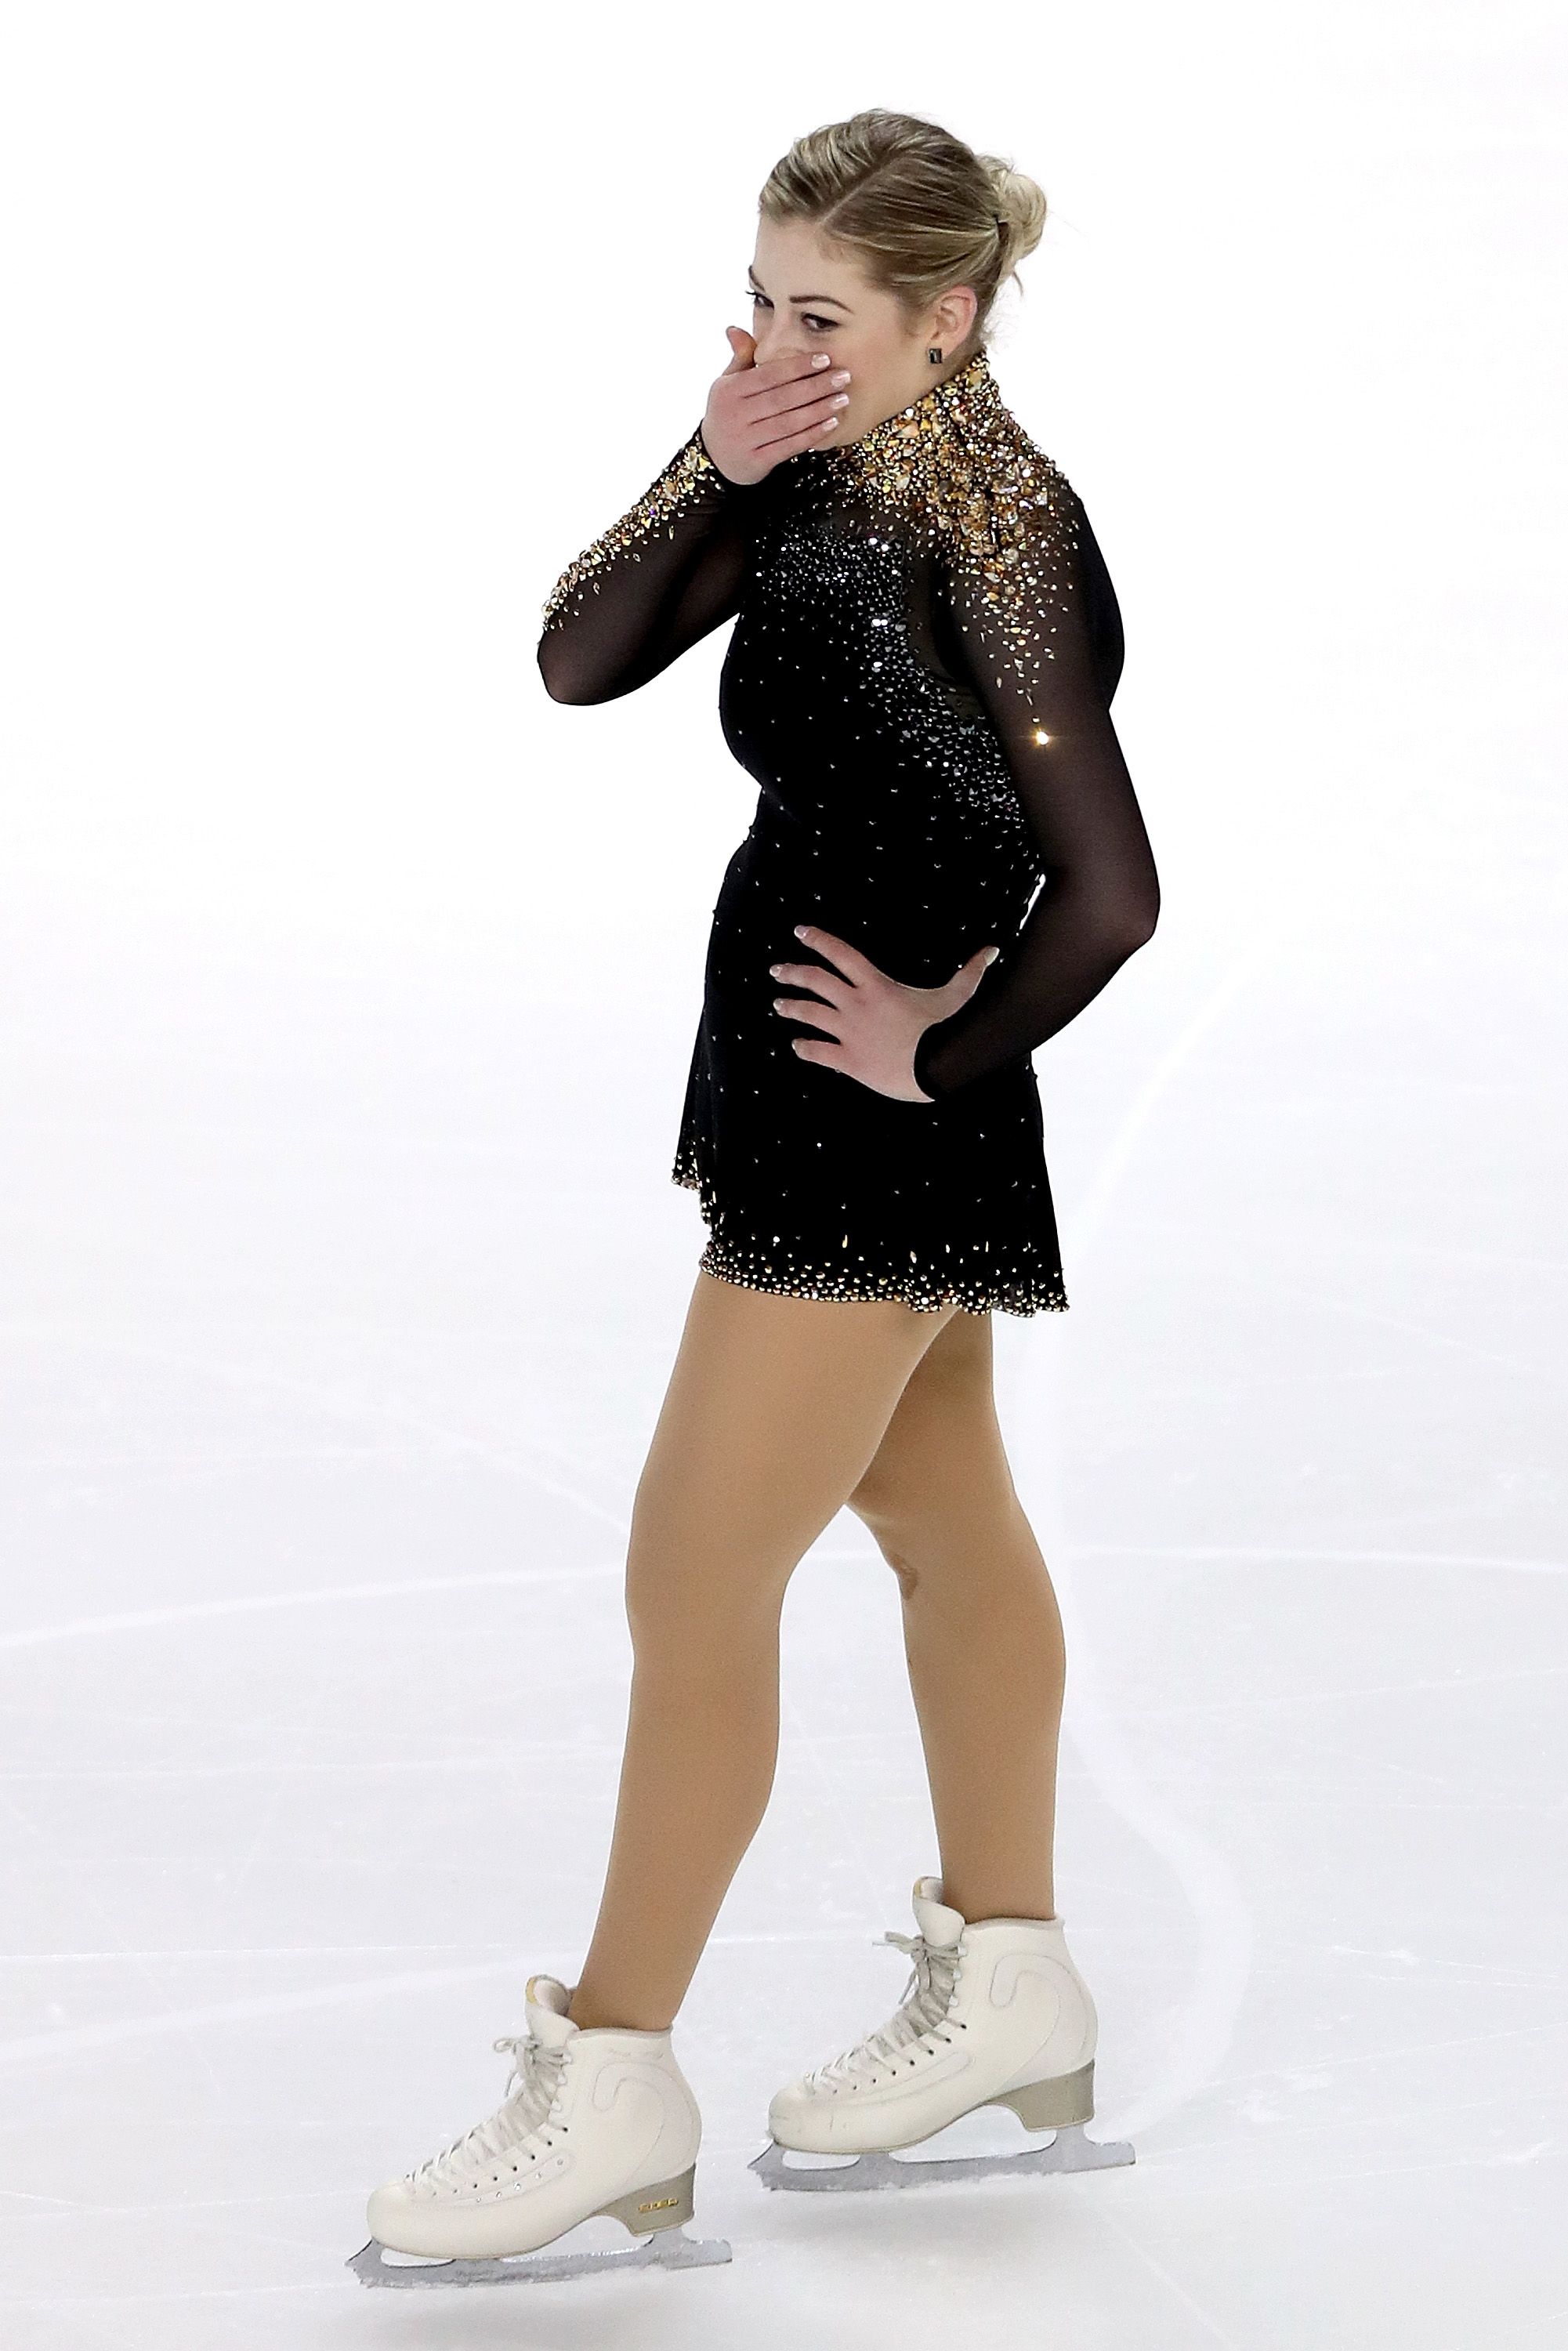 フィギュアスケーターのグレイシー・ゴールド、摂食障害を乗り越えて復活